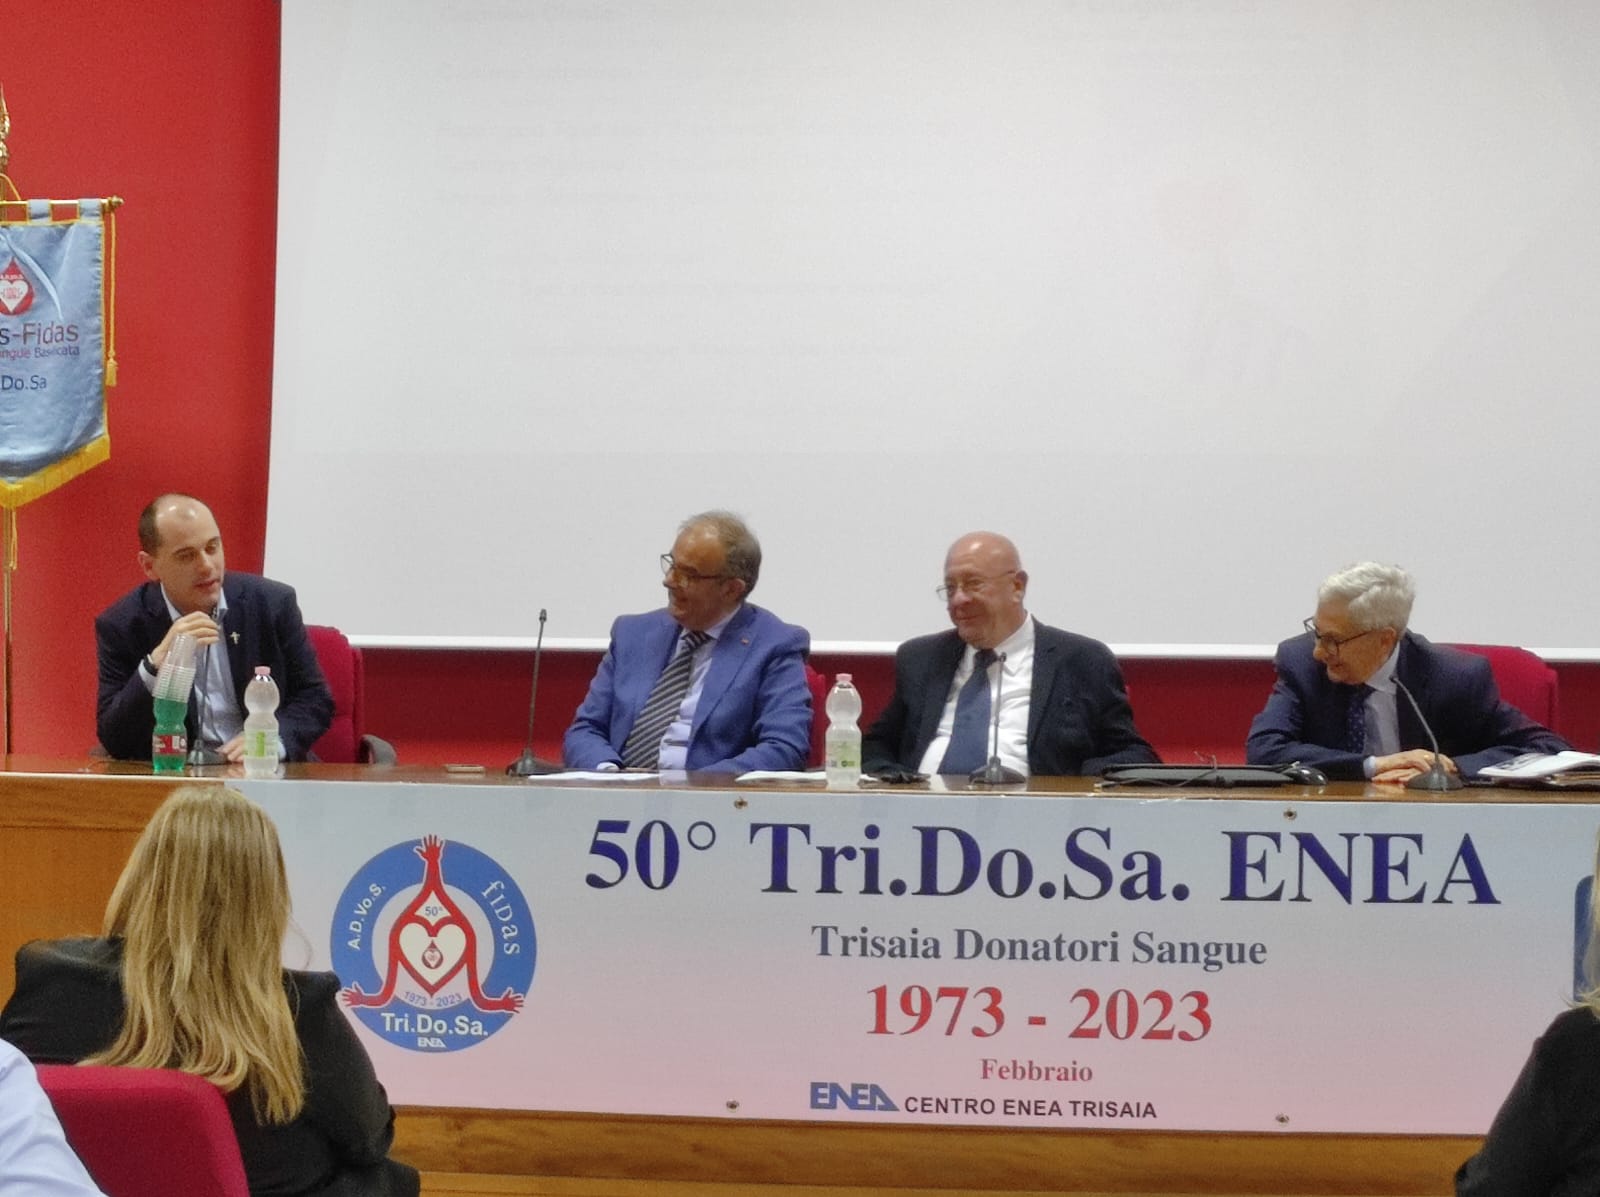 La FIDAS TRI.DO.SA Enea di Rotondella festeggia 50 anni di attività associativa